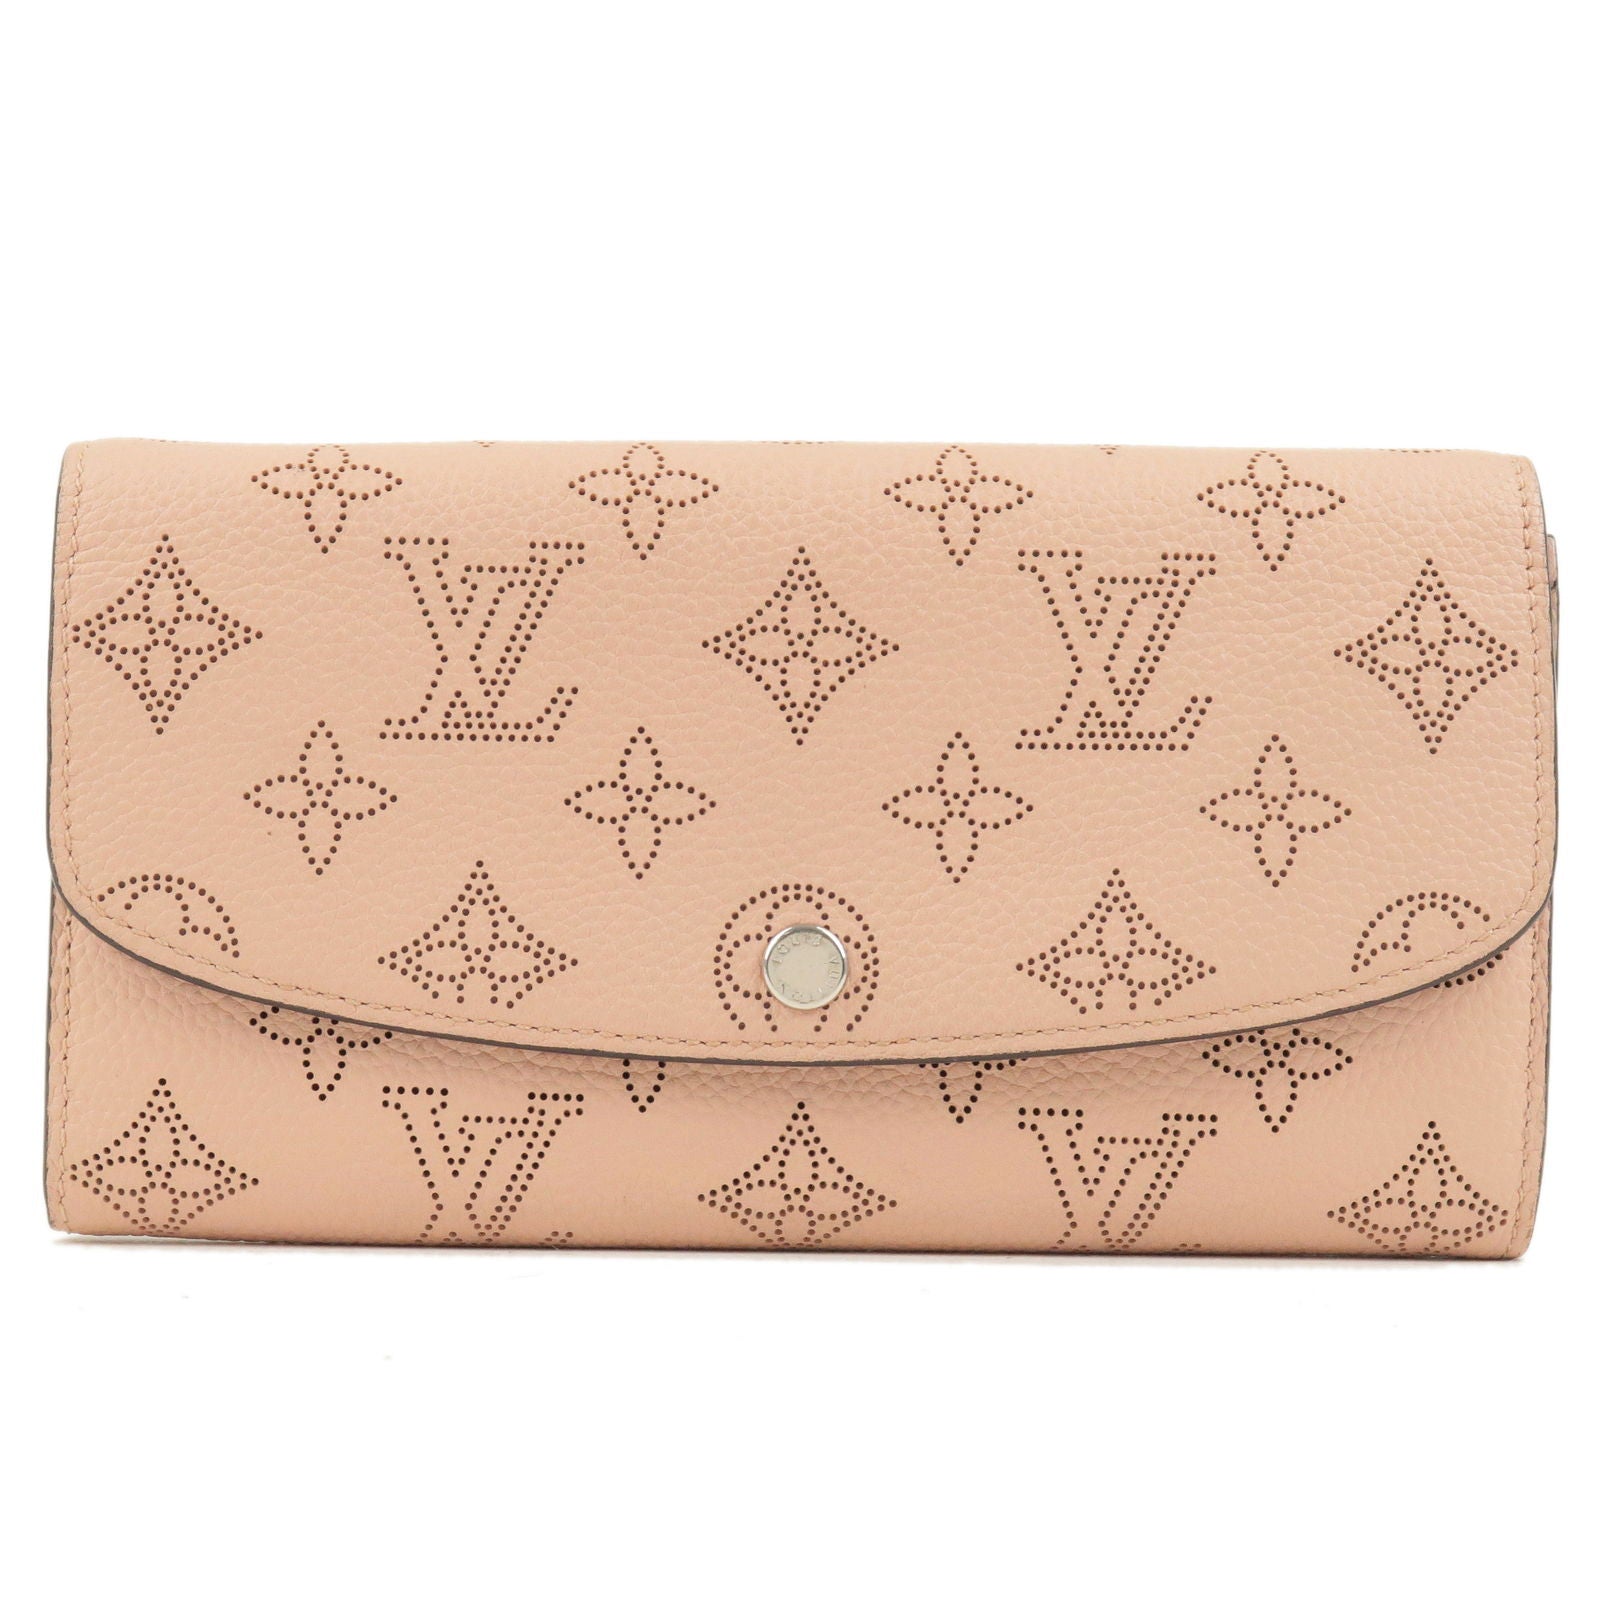 Louis Vuitton Portefeuille Monogram Wallet on SALE